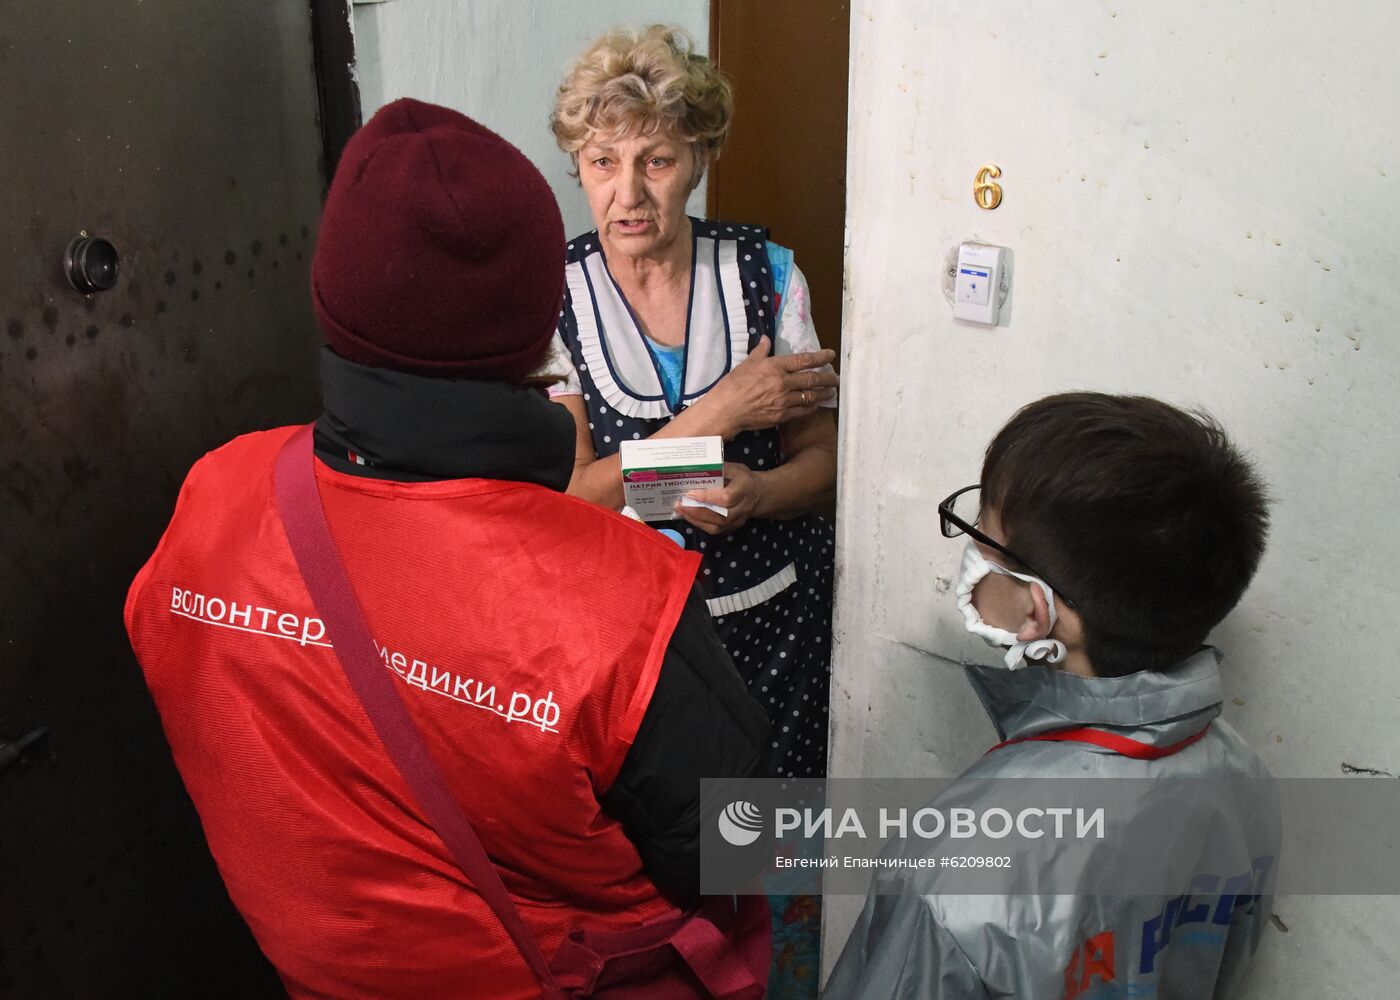 Помощь волонтеров пожилым людям в ситуации коронавируса